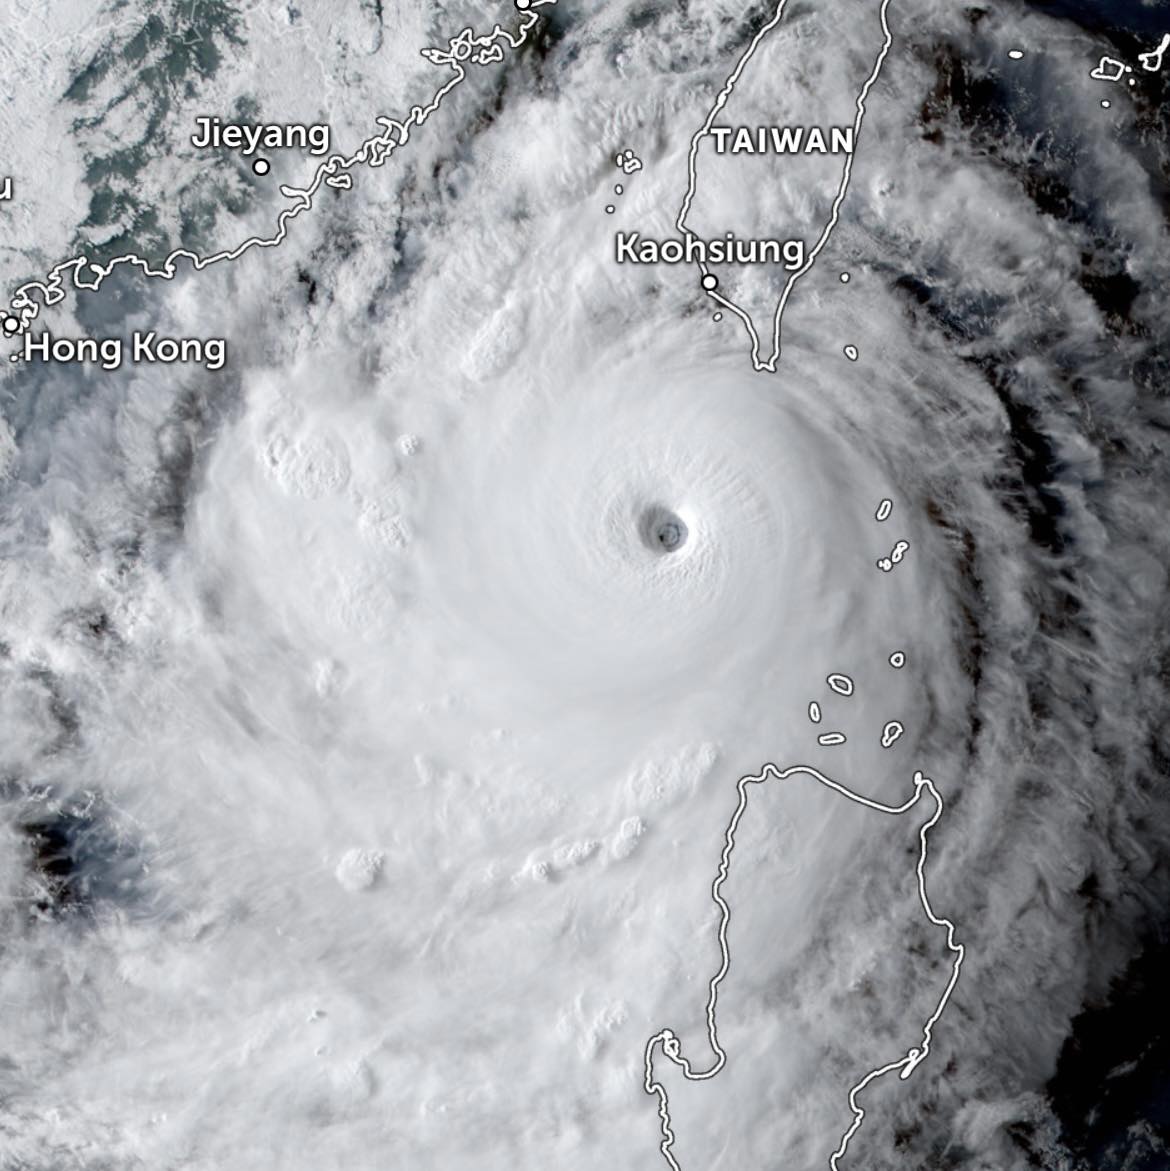 Siêu bão Saola với đĩa mây đối xứng và đậm đặc, cùng mắt bão cực kì sắc nét xuất hiện hiếm thấy trên khu vực Biển Đông. Ảnh: FB